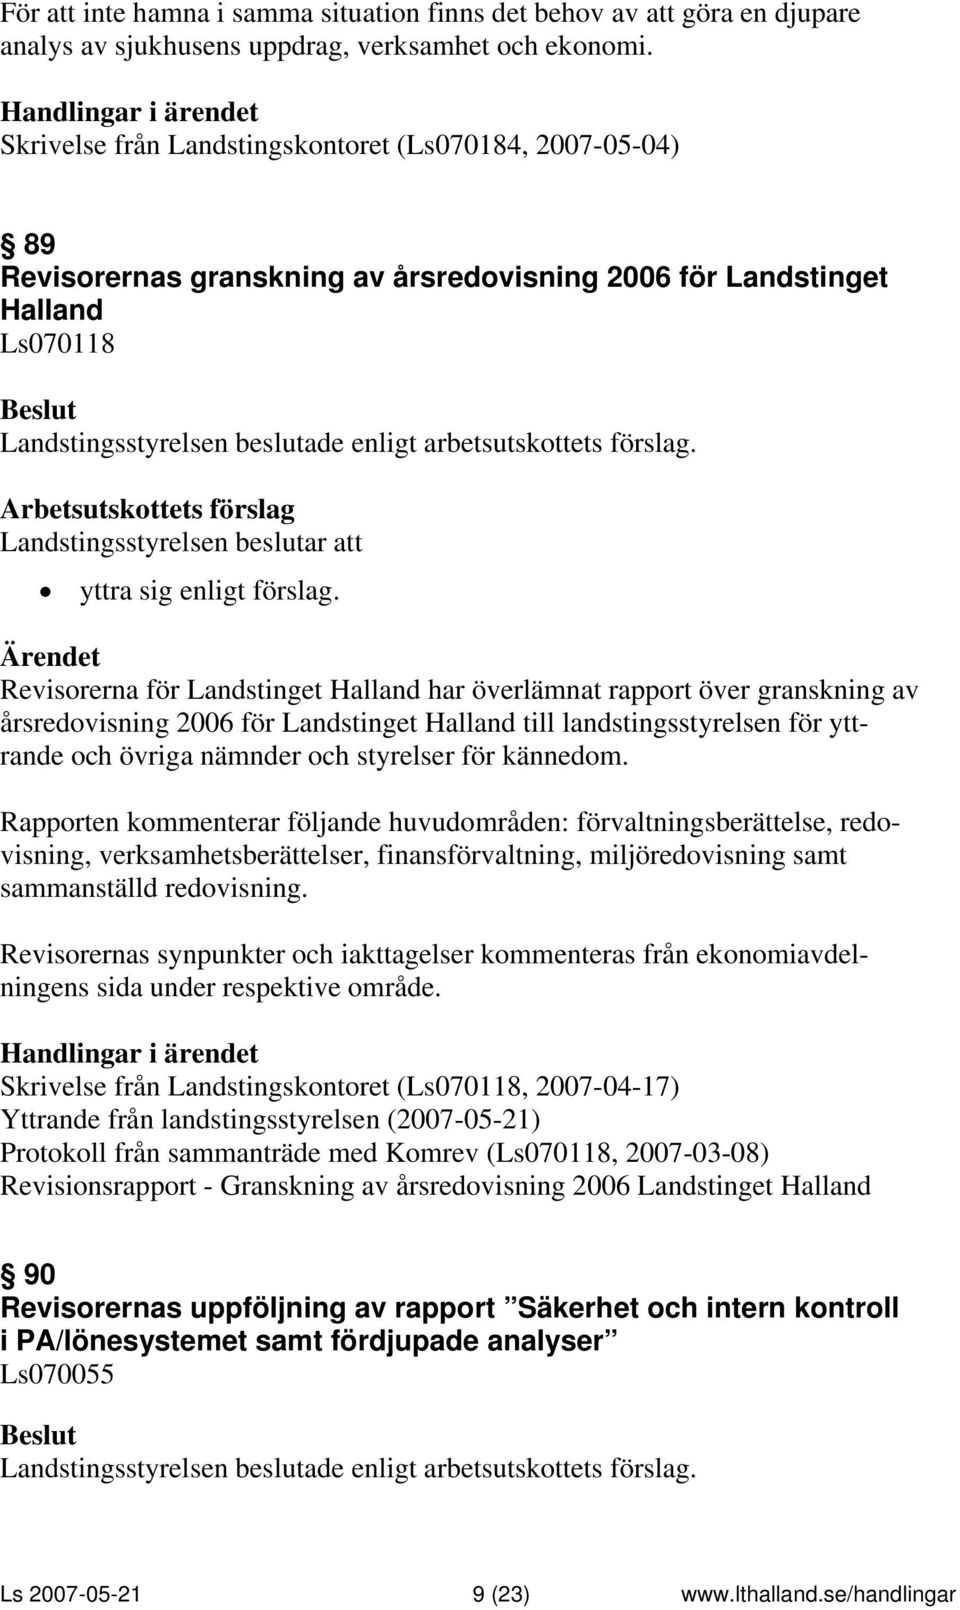 Revisorerna för Landstinget Halland har överlämnat rapport över granskning av årsredovisning 2006 för Landstinget Halland till landstingsstyrelsen för yttrande och övriga nämnder och styrelser för